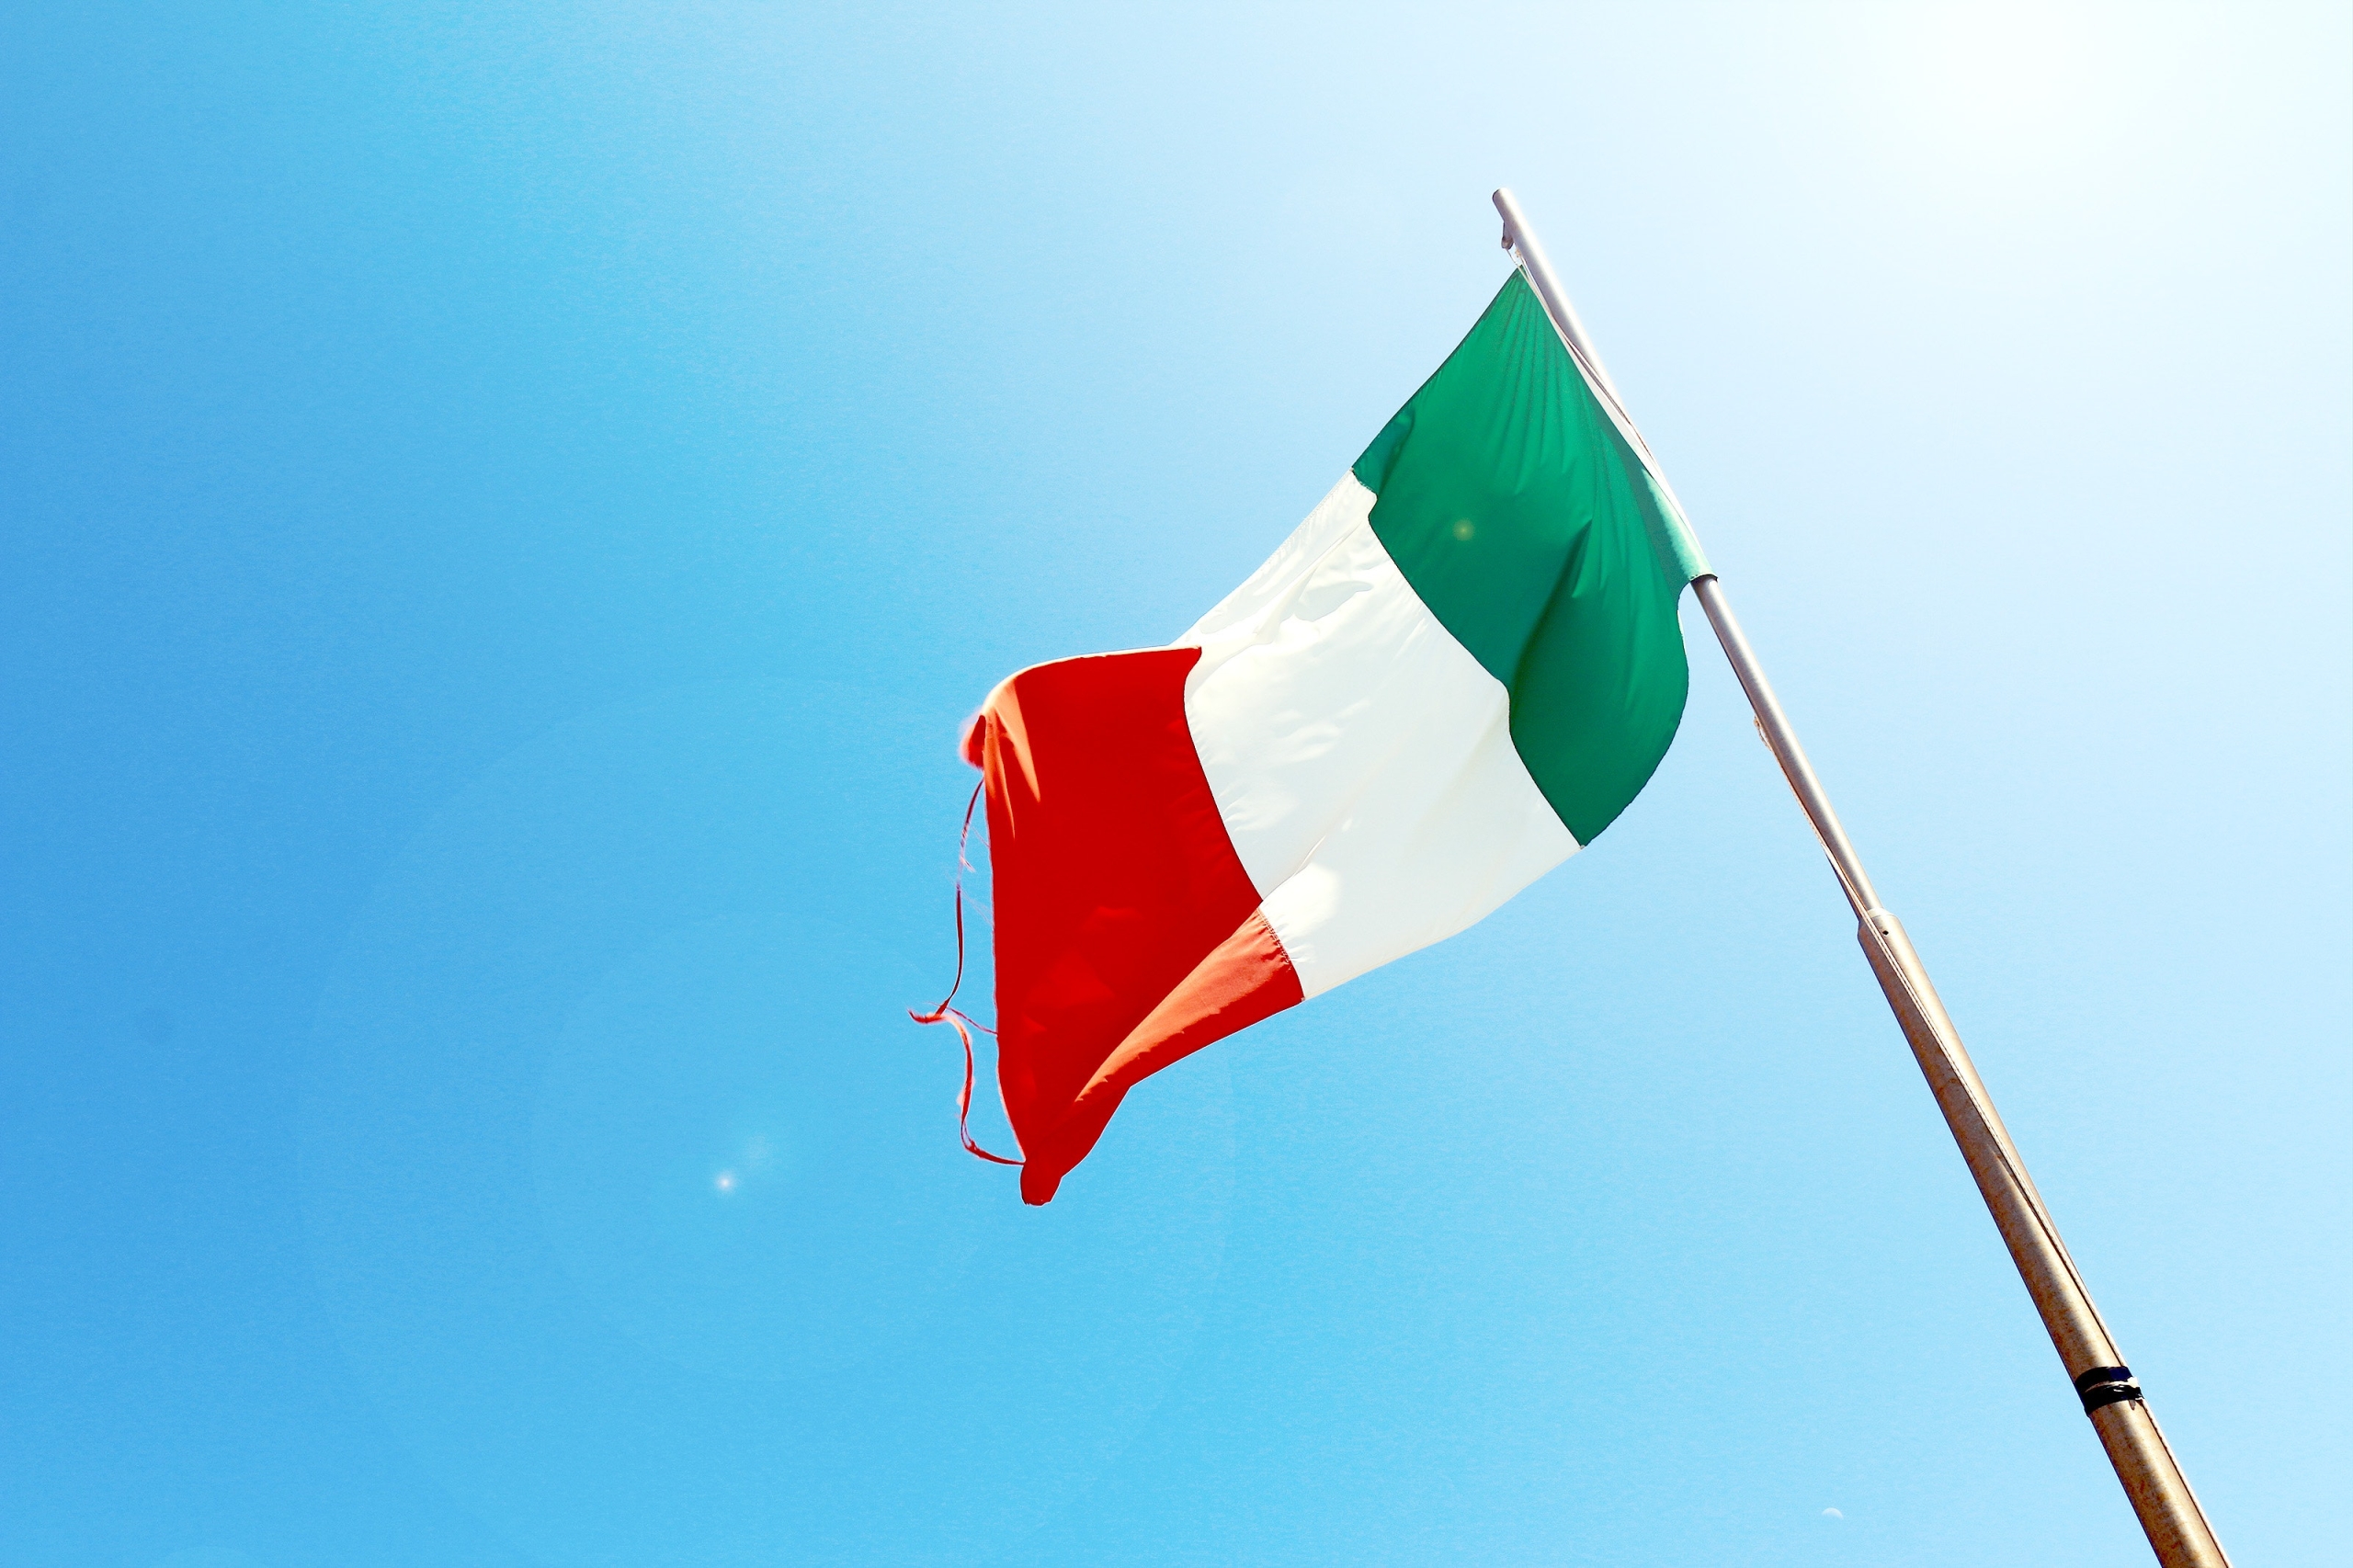 Kurs włoskiego we Włoszech – poznaj język i kulturę kraju o niezwykłym dziedzictwie